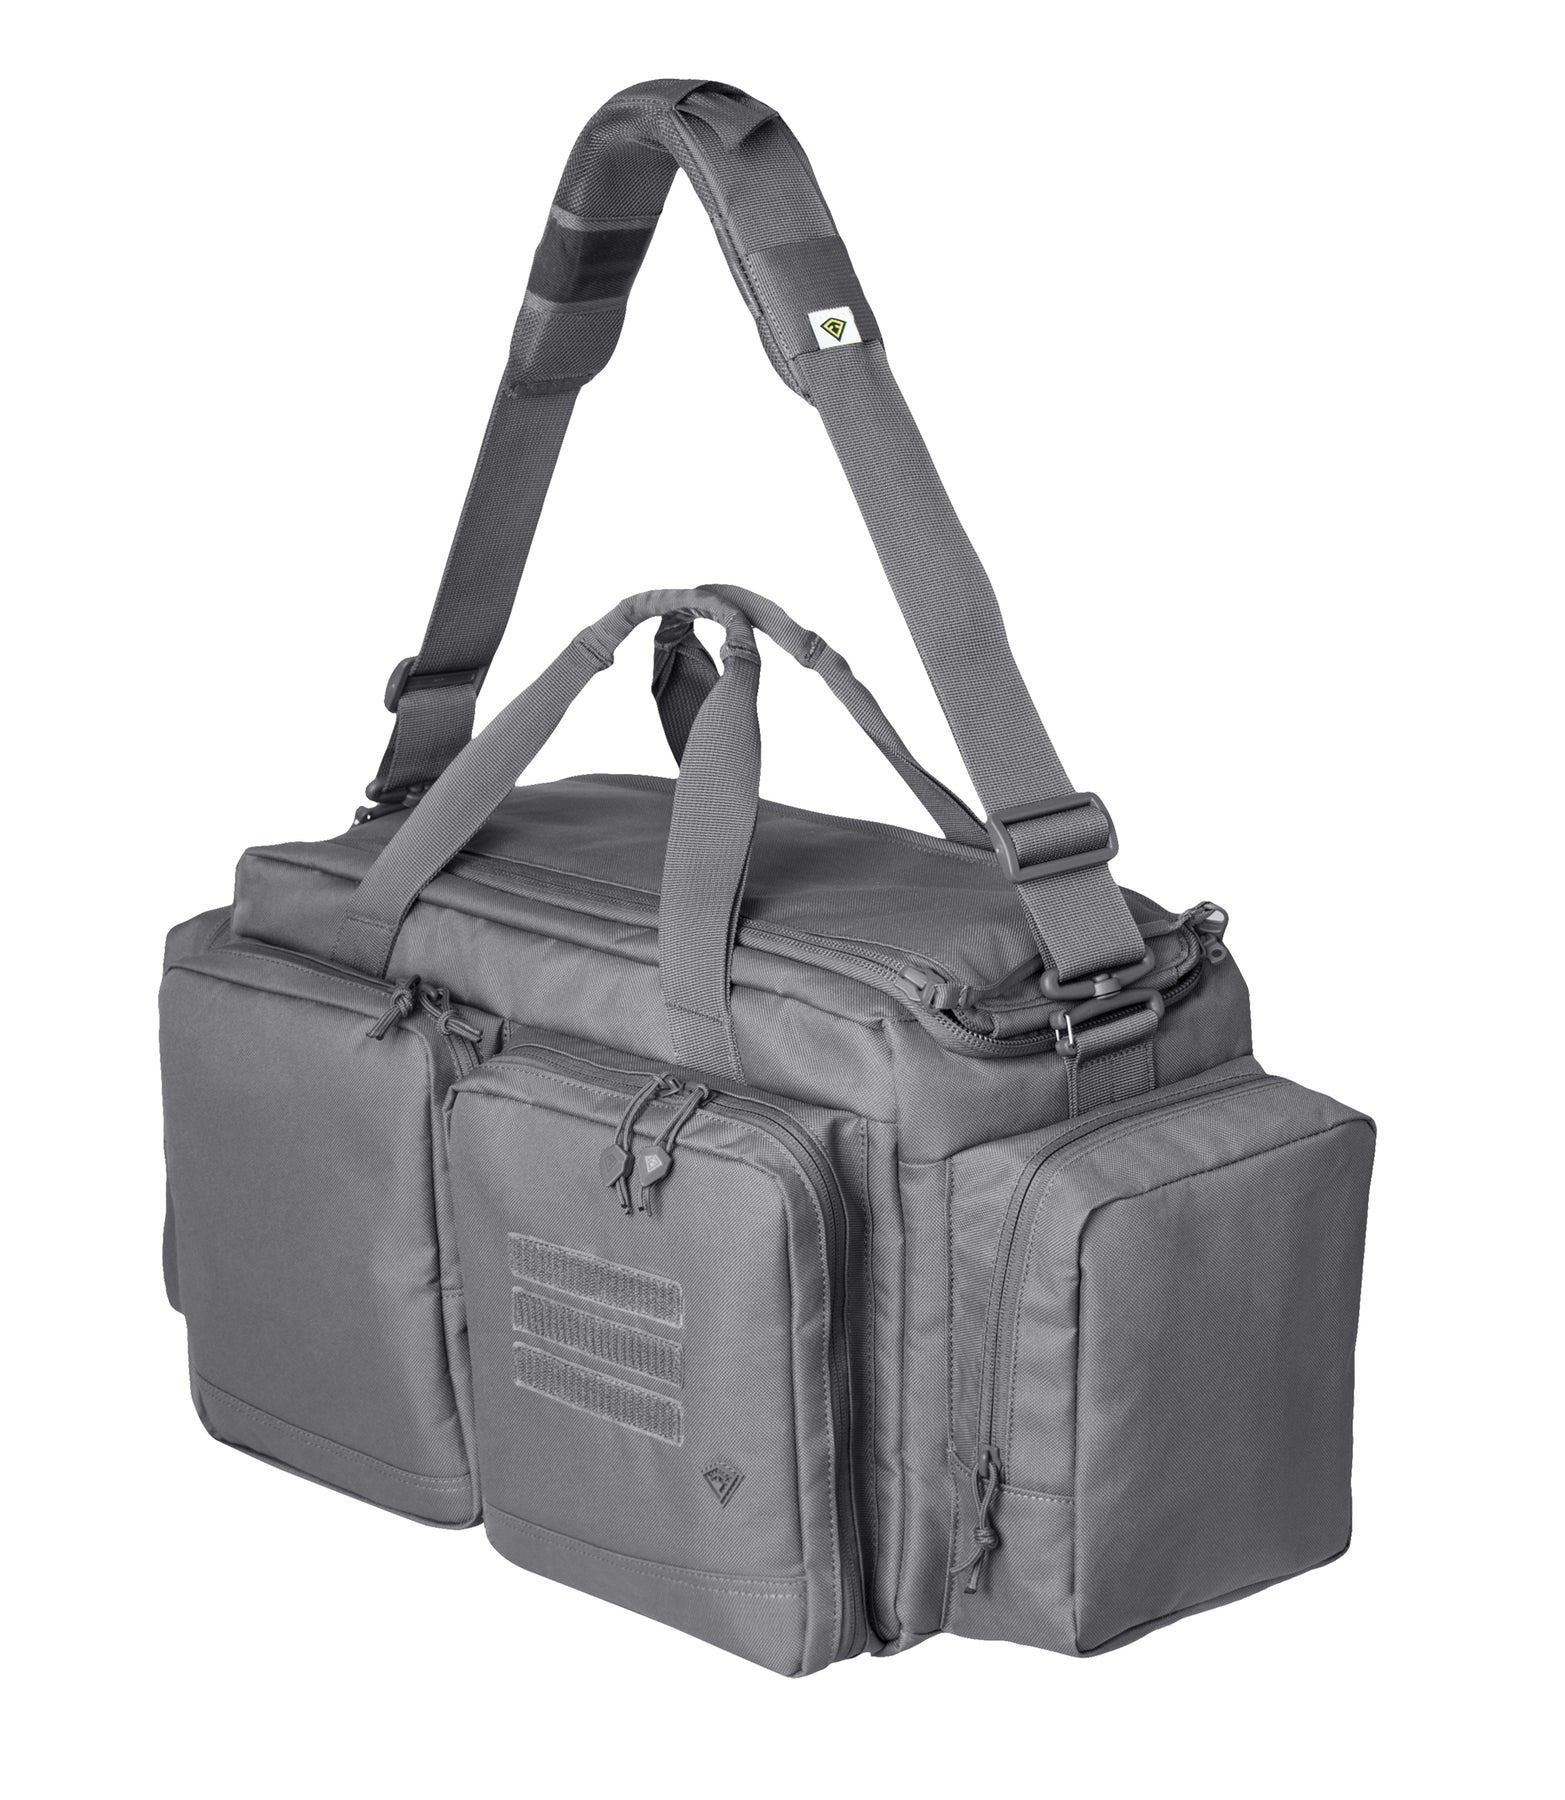 Range Bag  Outdoor und Tactical Equipment 